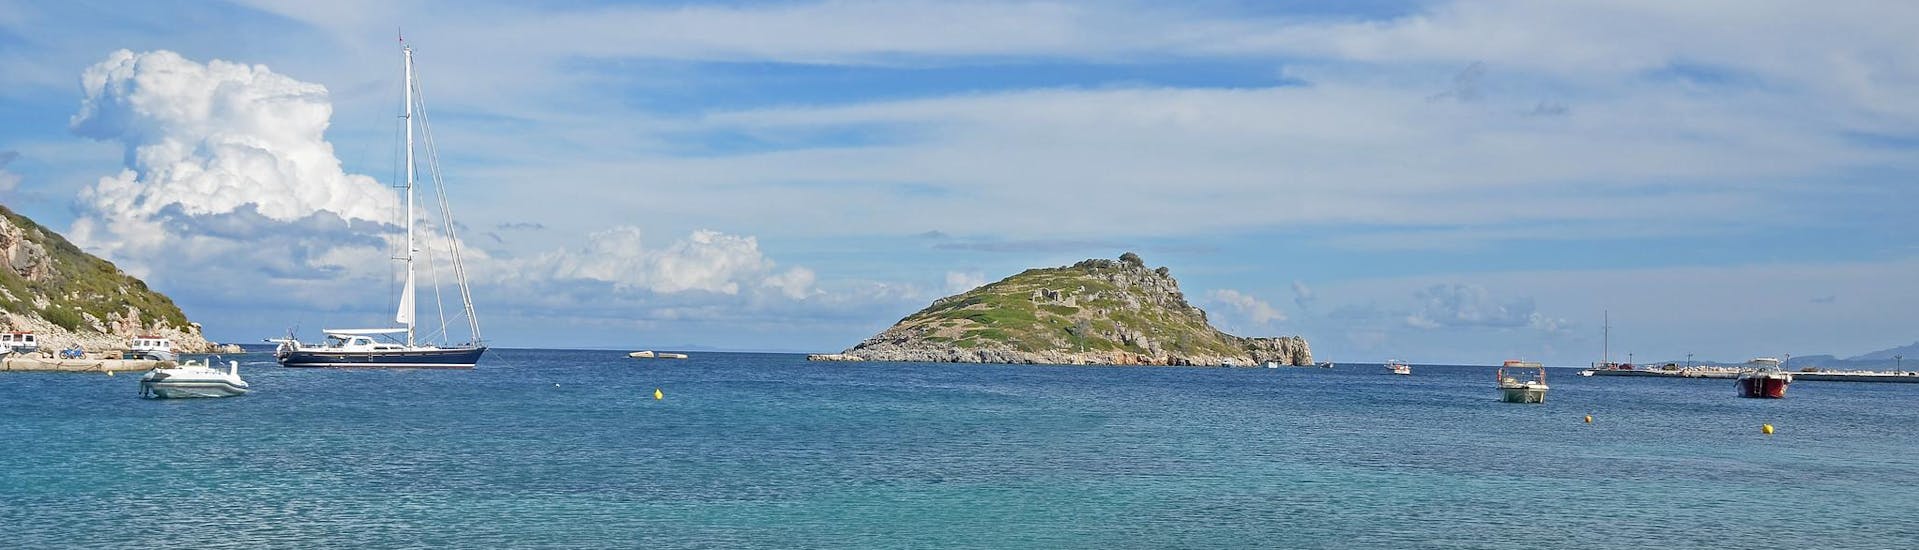 Il porto di Agios Nikolaos a Zakynthos, punto di partenza per le gite in barca nelle Isole Ionie.